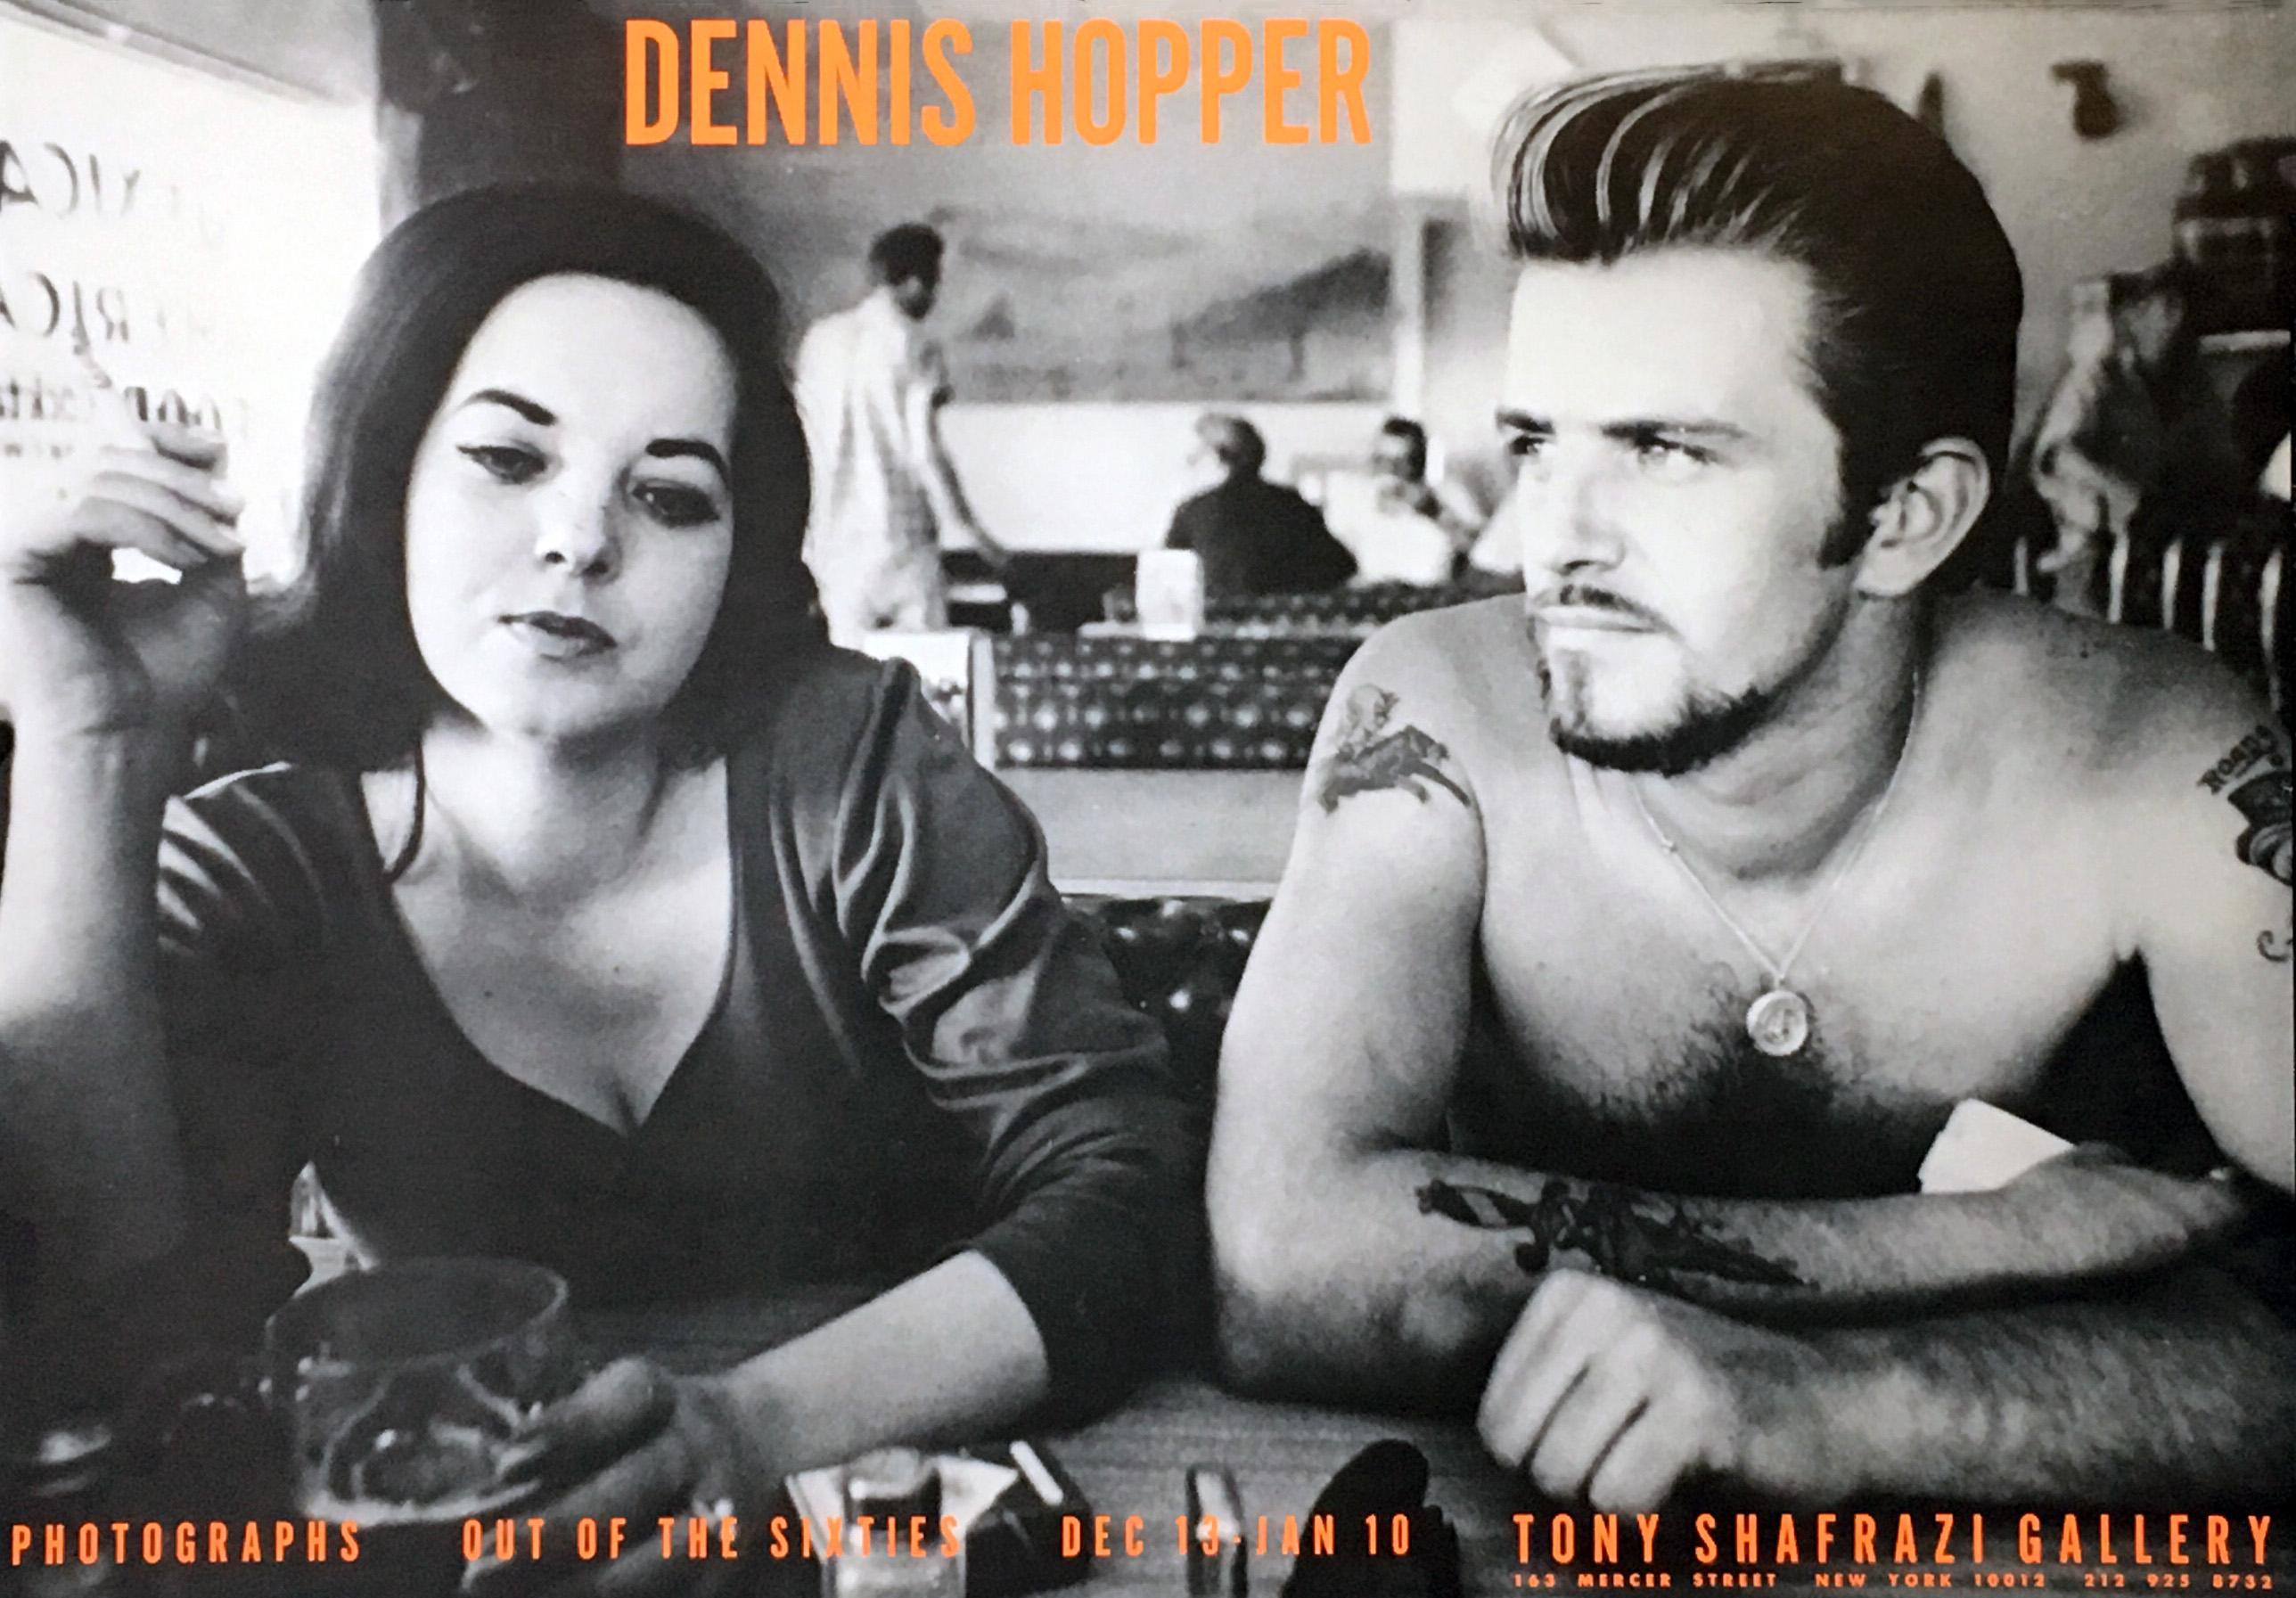 Dennis Hopper, Aus den Sechzigern 
1986 Ausstellungsplakat veröffentlicht Tony Shafrazi Gallery, New York 1986
Bild: Dennis Hopper's  Biker-Paar" (1961) 

Offset-Lithographie.
17 x 24 Zoll.
Einige kleinere Gebrauchsspuren; ansonsten für sein Alter